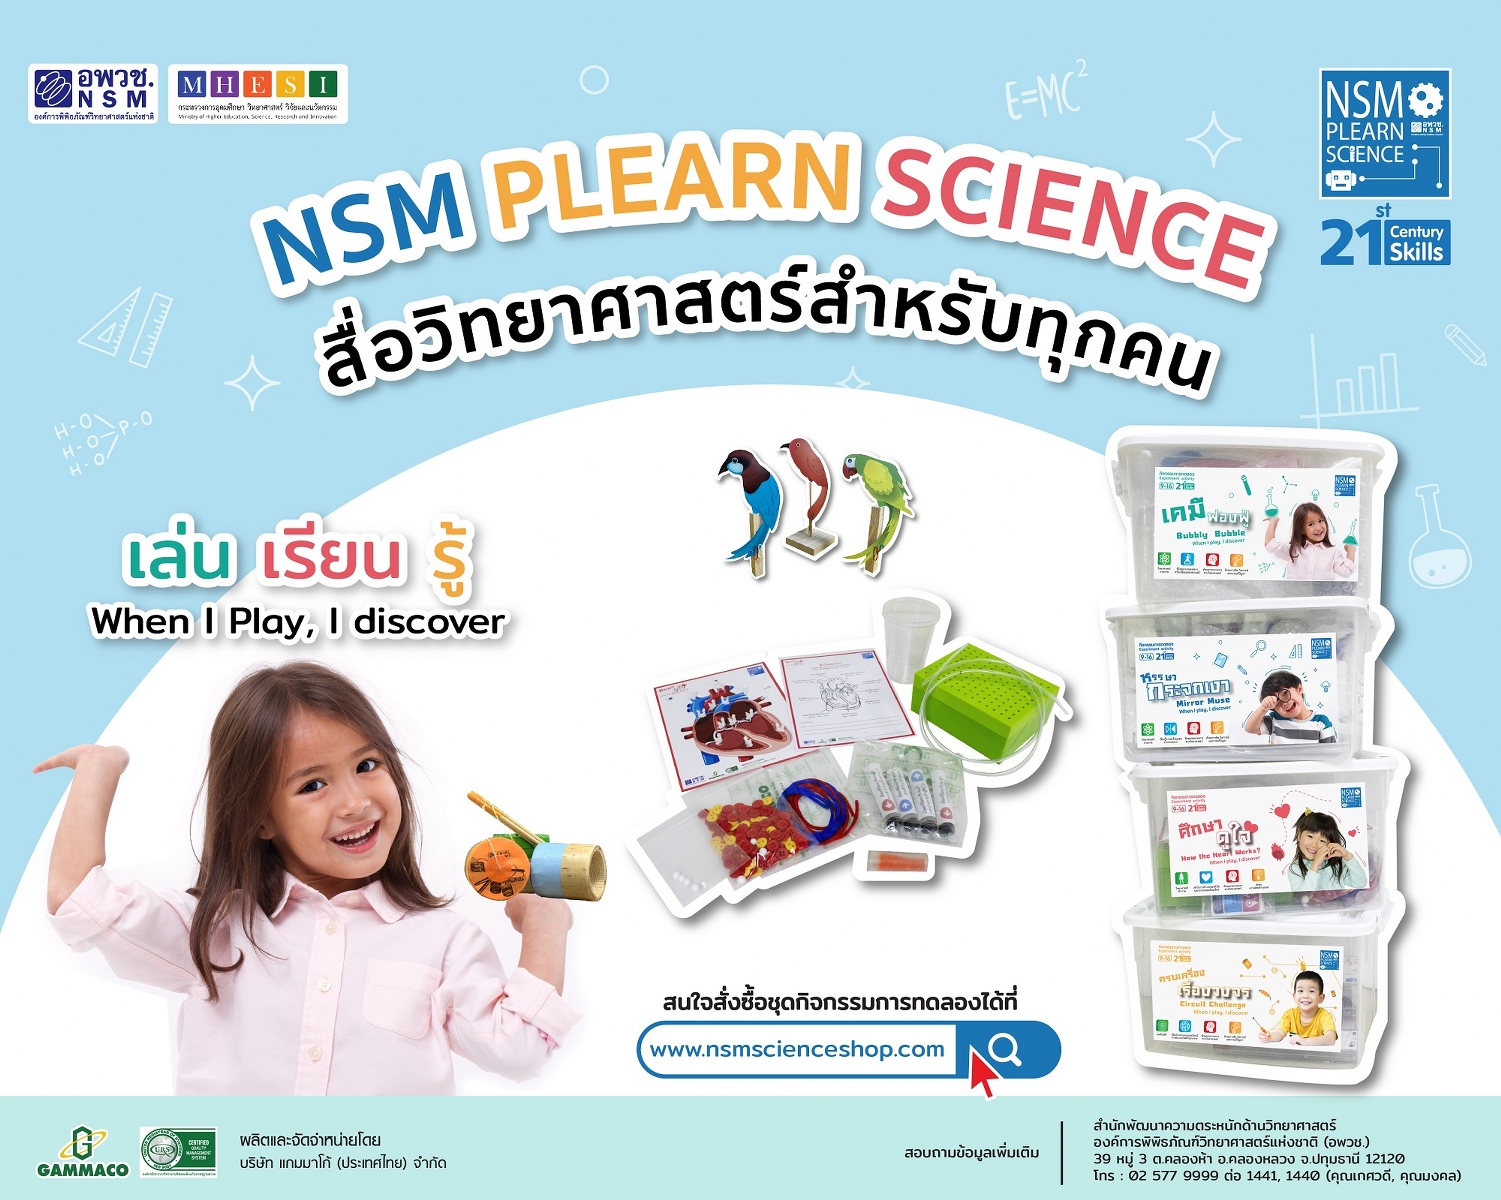 อพวช. ผุดโปรเจค NSM Plearn Science ผลิต Lab Box และ Science Toys เสริมสร้างทักษะและส่งเสริมการเรียนรู้วิทยาศาสตร์ให้กับเยาวชน